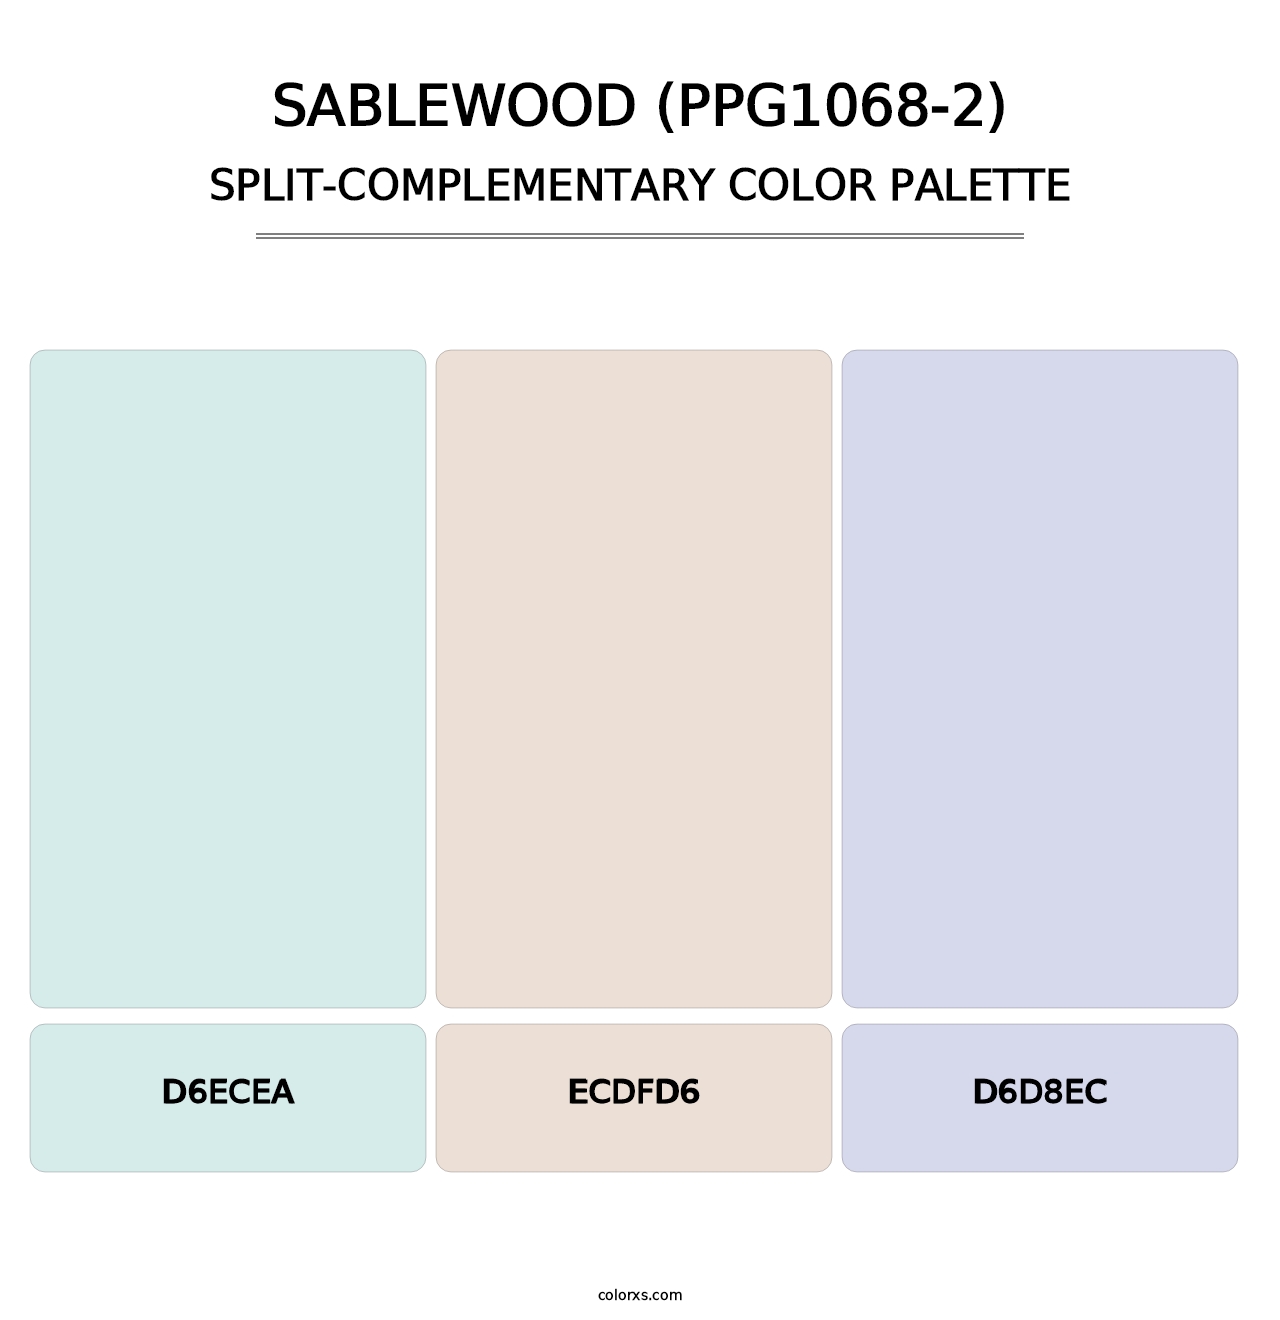 Sablewood (PPG1068-2) - Split-Complementary Color Palette